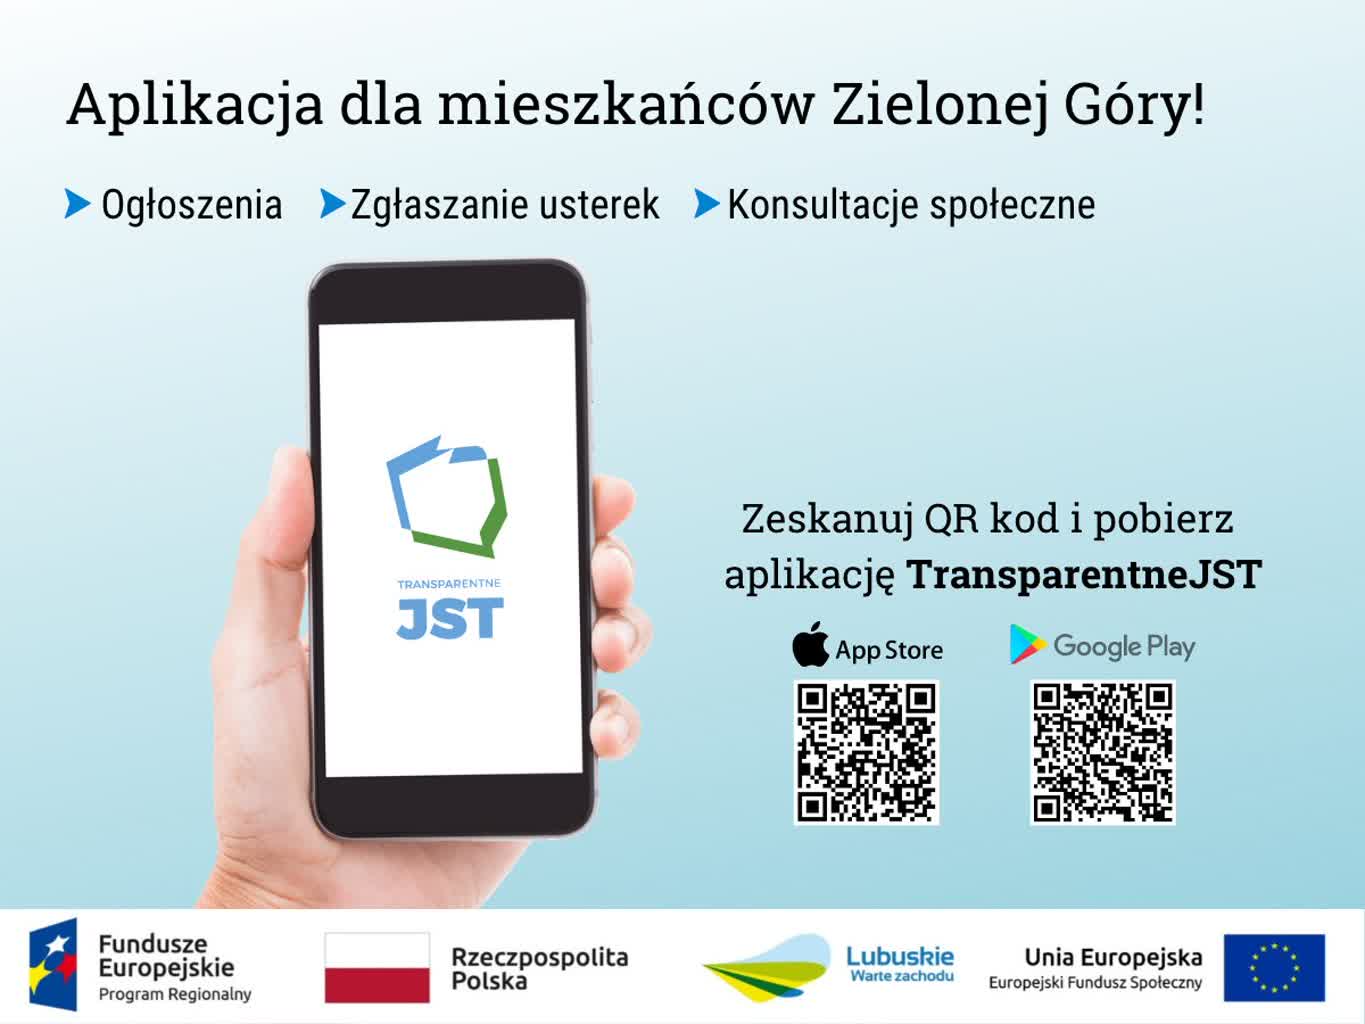 Urząd miasta Zielona Góra przygotował aplikację „TransparentneJST” Radio Zachód - Lubuskie